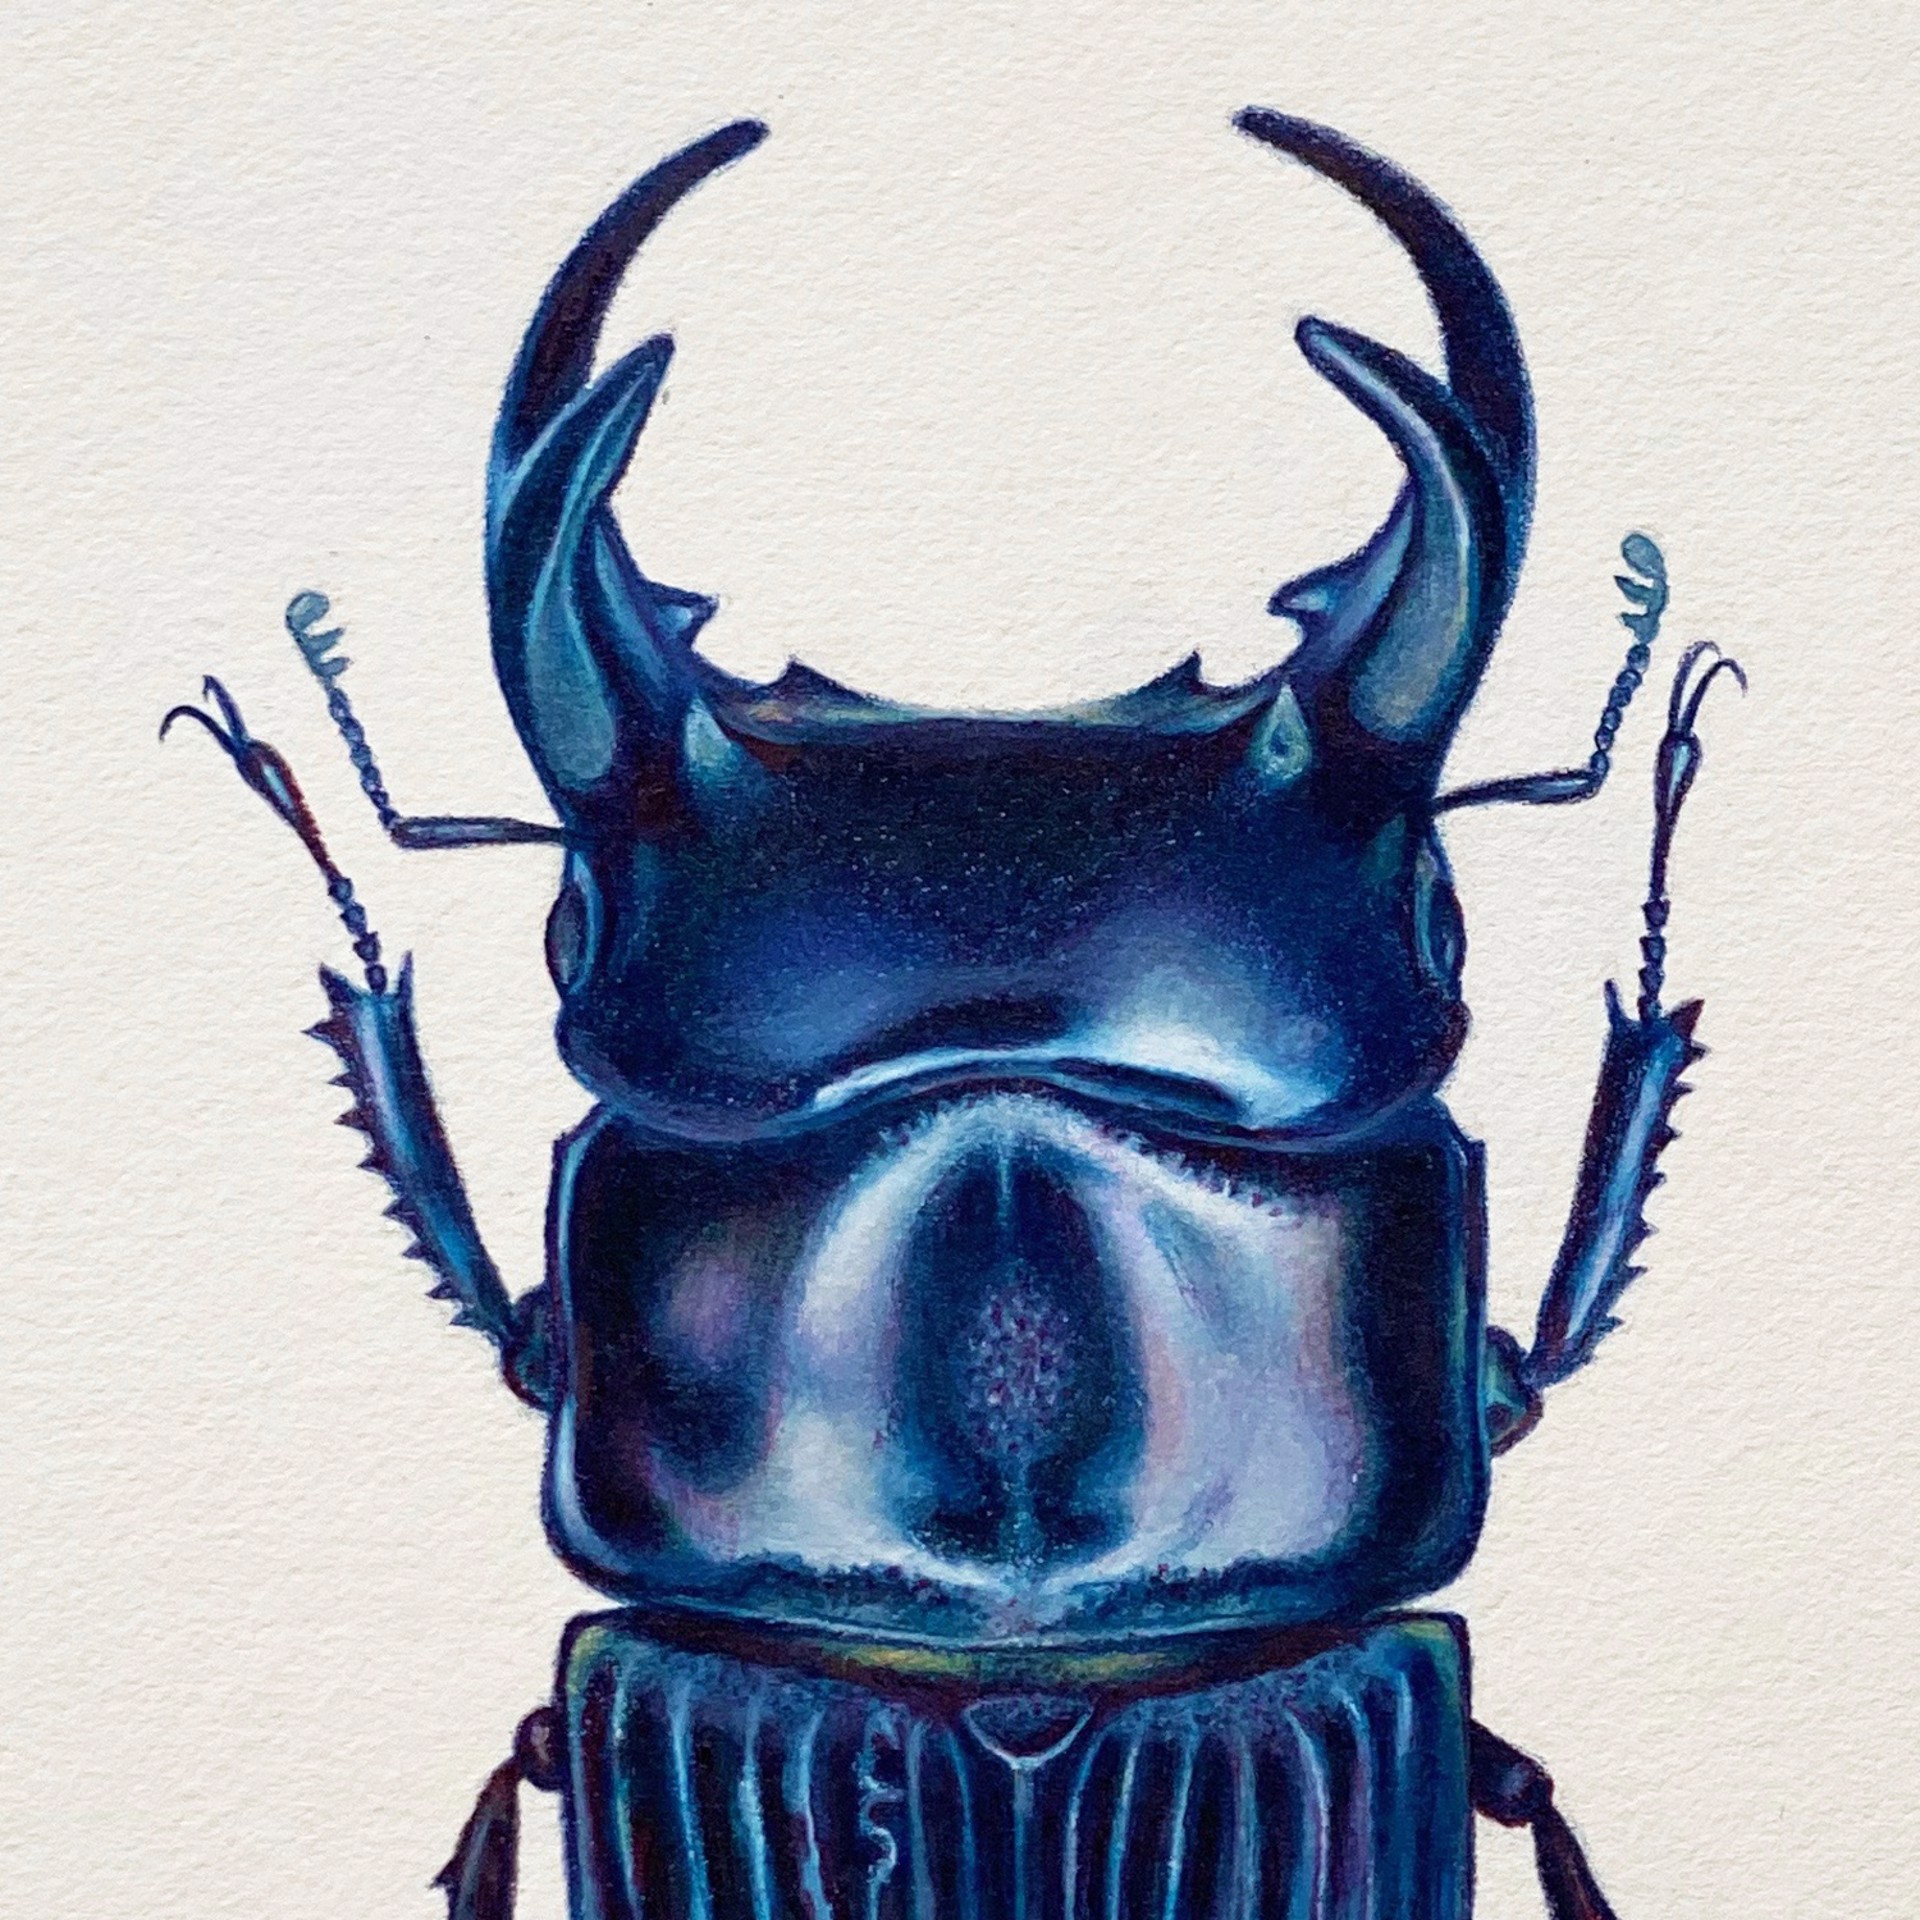 Coleoptera Chroma #22 by Hannah Hanlon